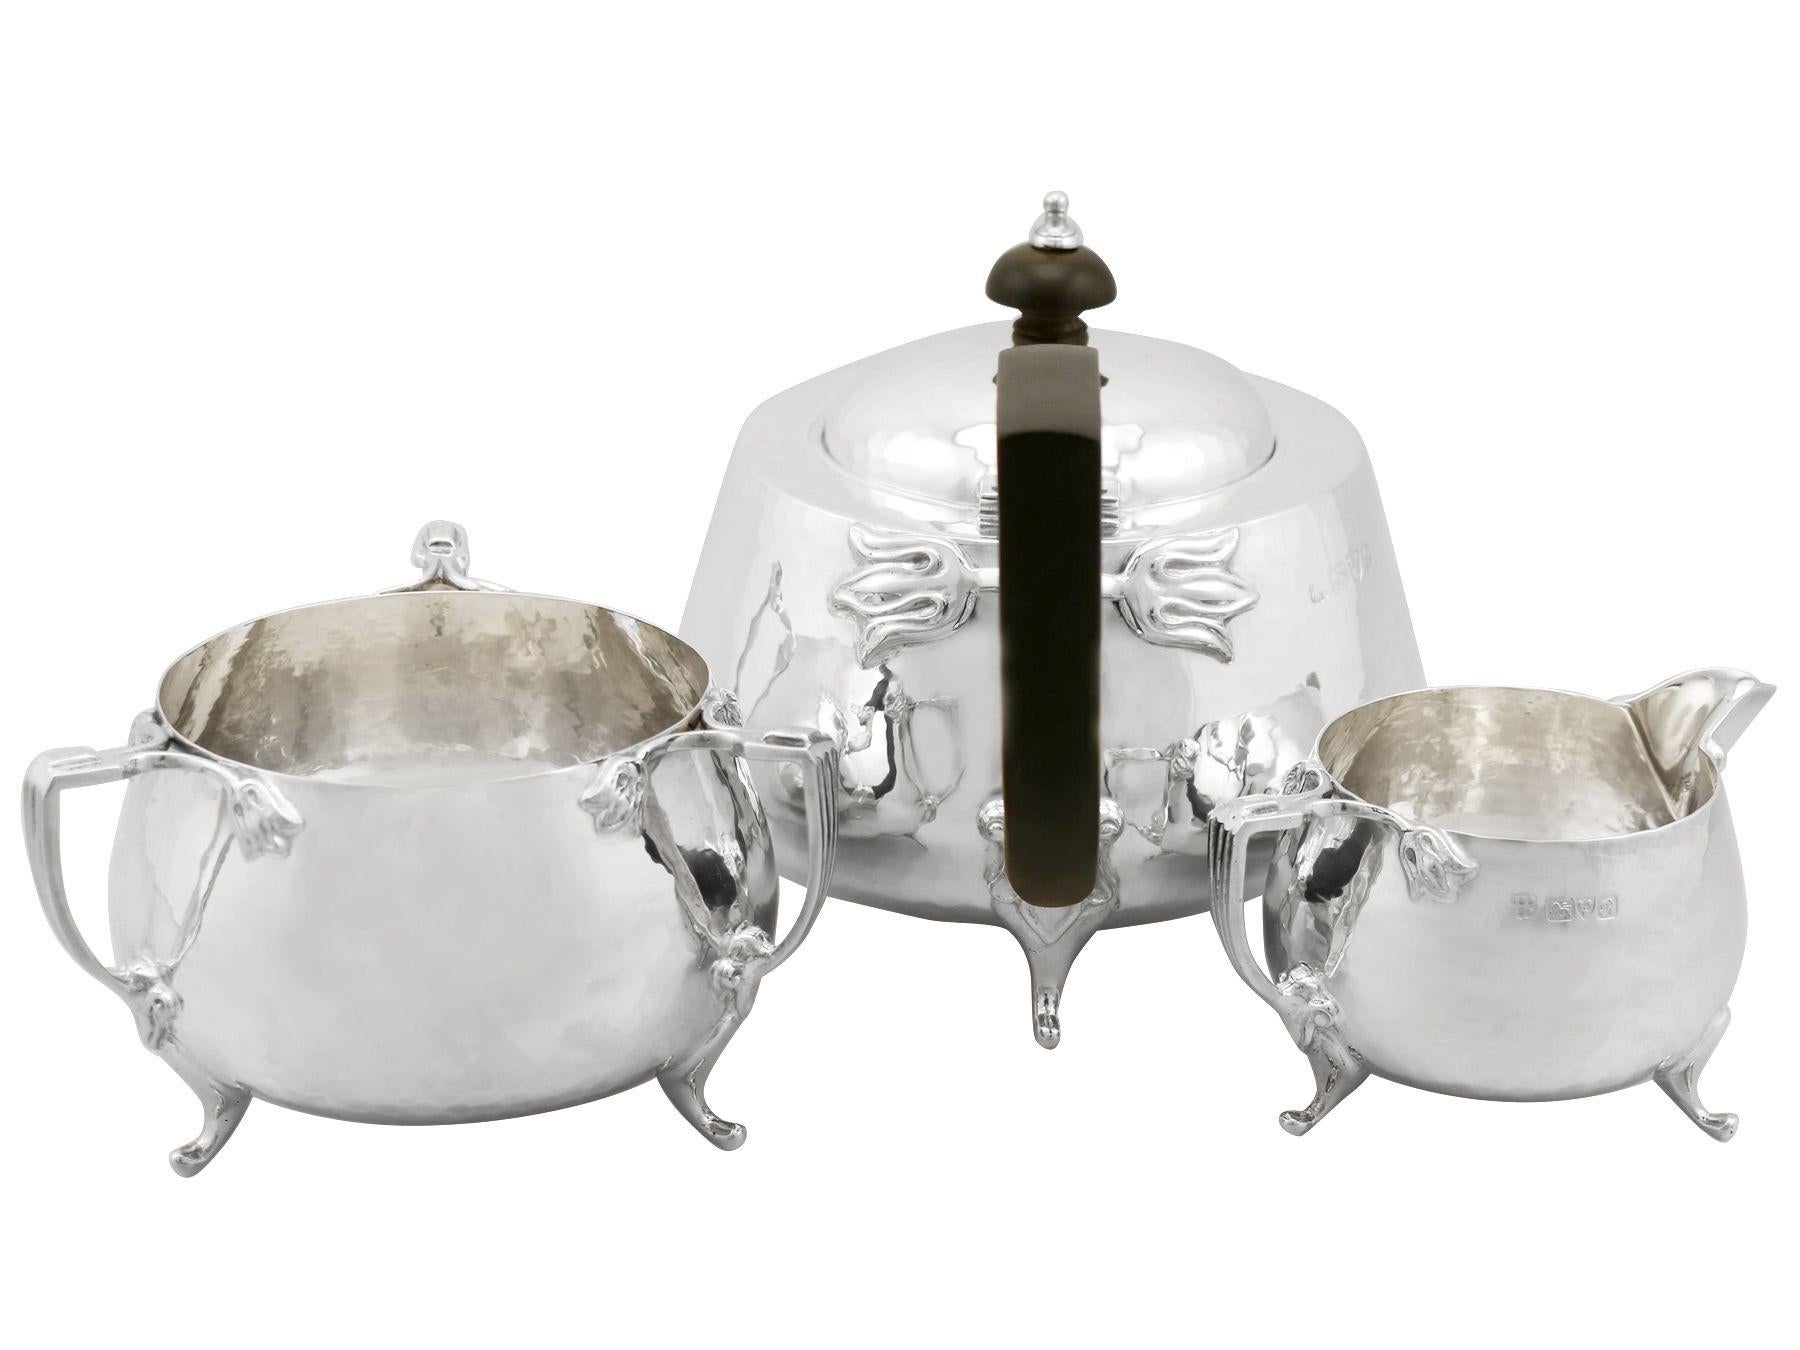 Un beau et impressionnant service à thé antique en argent sterling de George V, composé de trois pièces, dans le style Art nouveau ; un ajout à notre collection de services à thé antiques.

Ce service à thé antique en argent sterling de George V